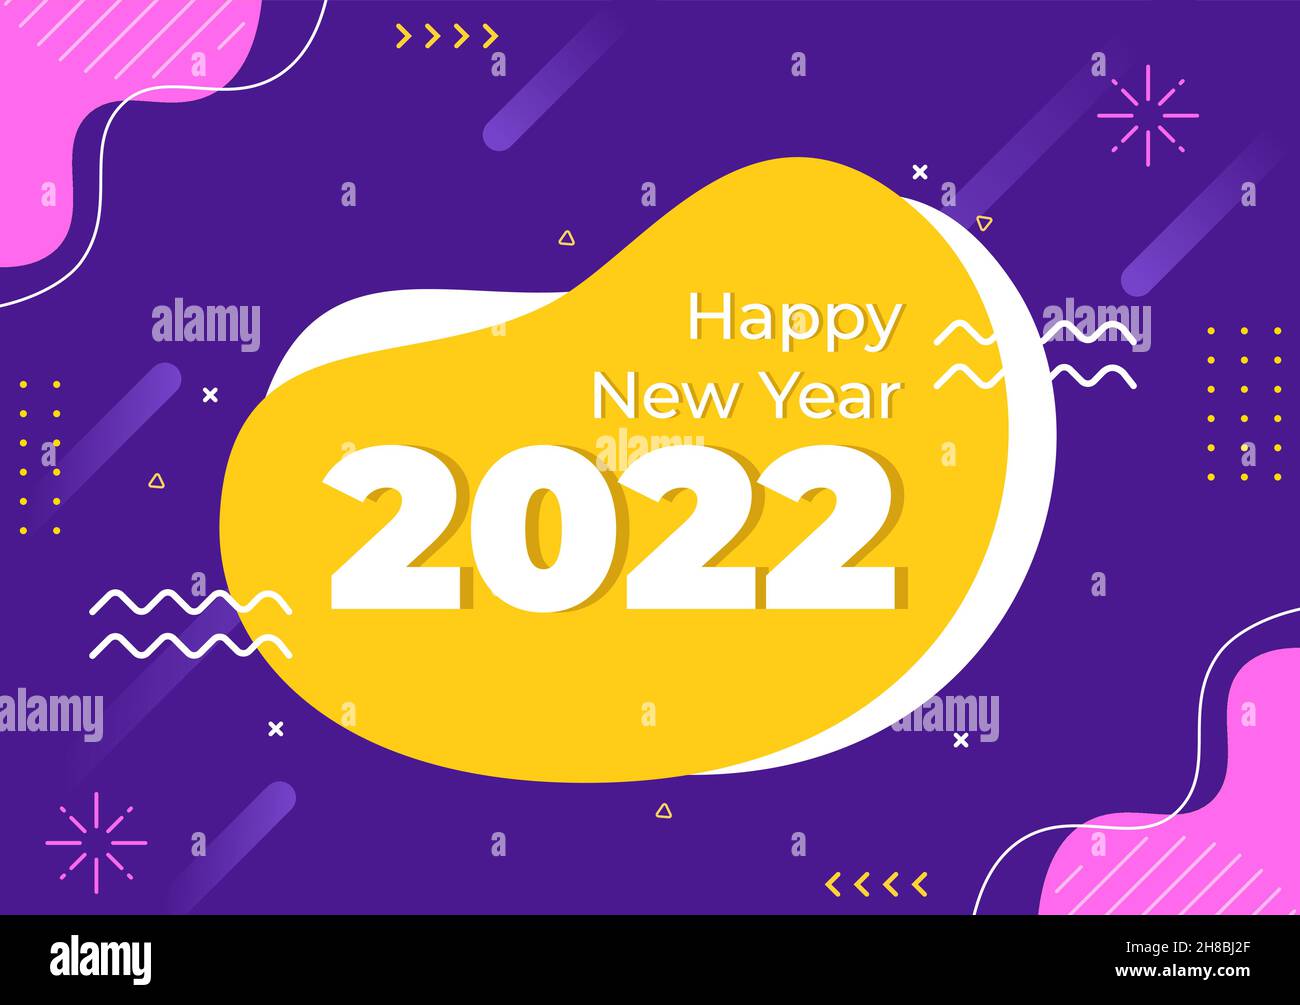 Frohes neues Jahr 2022 Vorlage flache Design Illustration mit Ribbons und Konfetti auf einem bunten Hintergrund für Poster, Broschüre oder Banner Stock Vektor